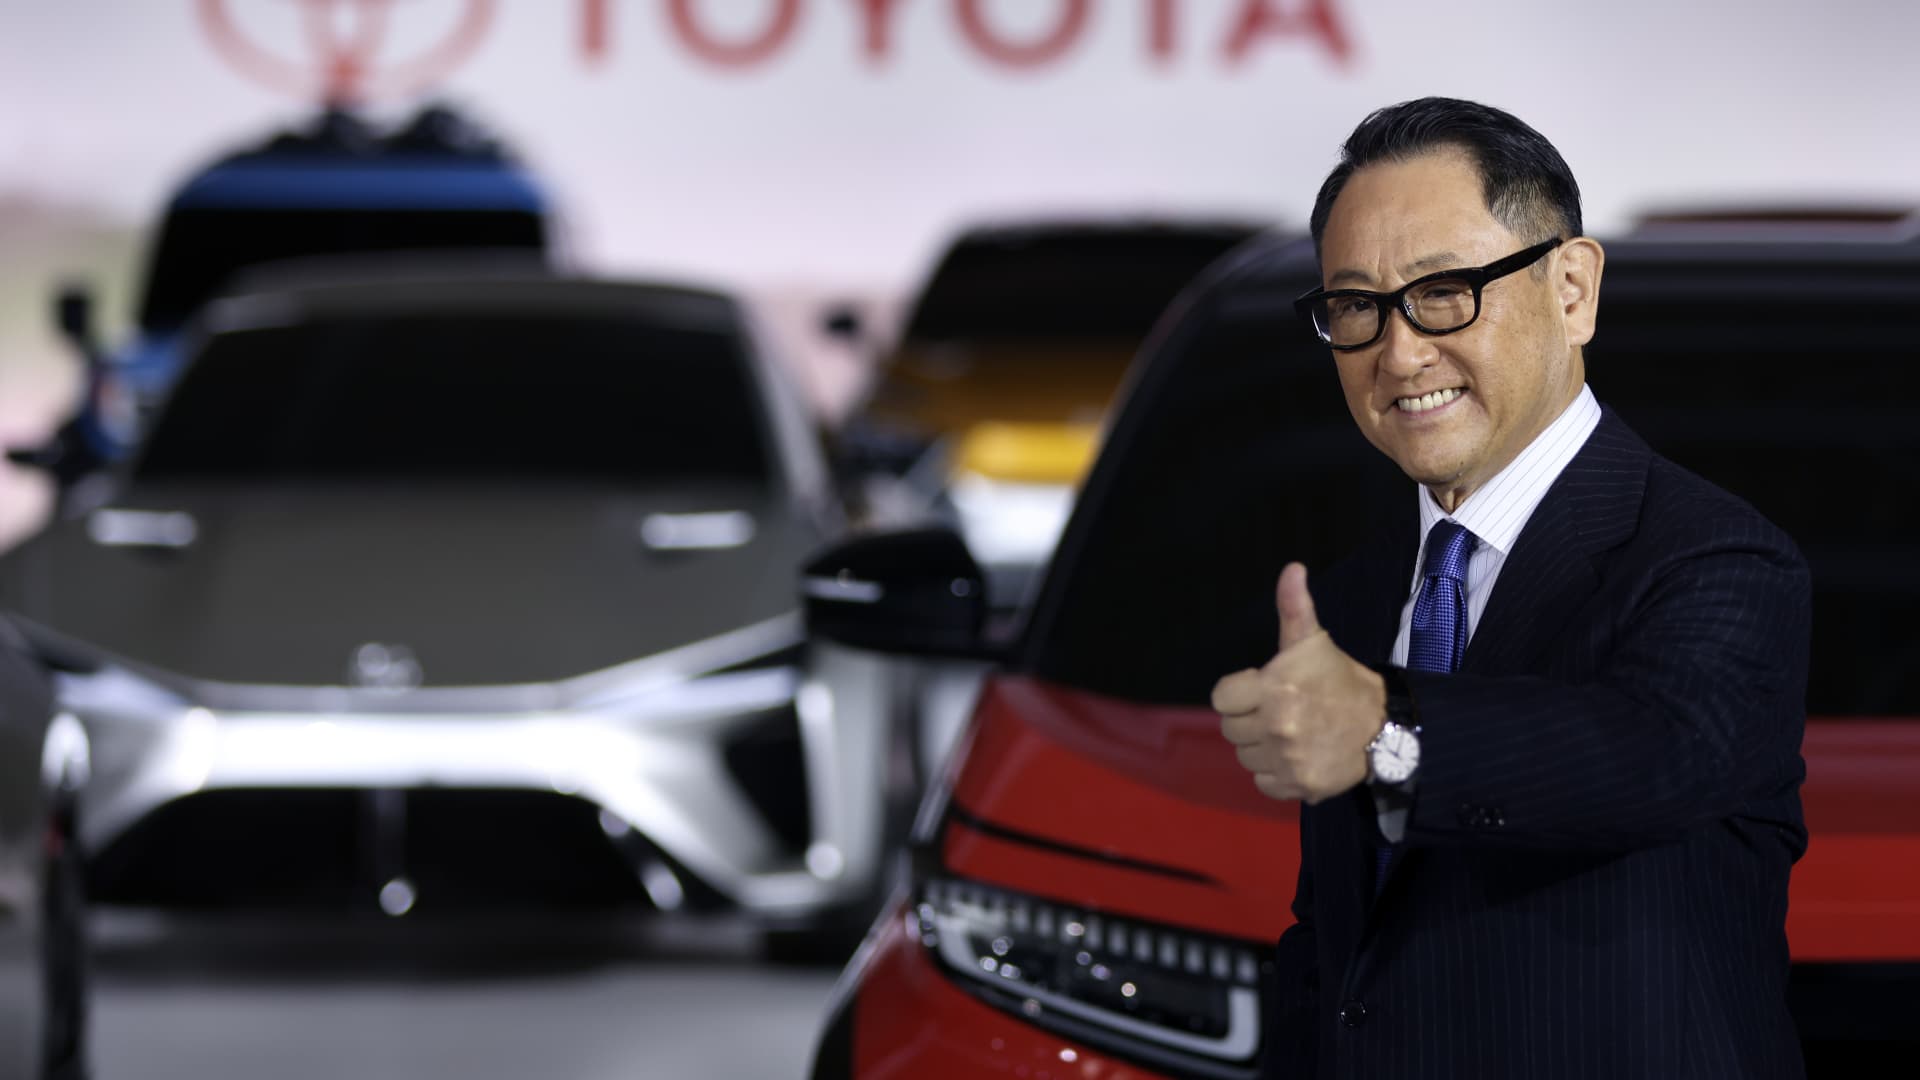 Toyota defies skeptics as stock seals best week since 2009